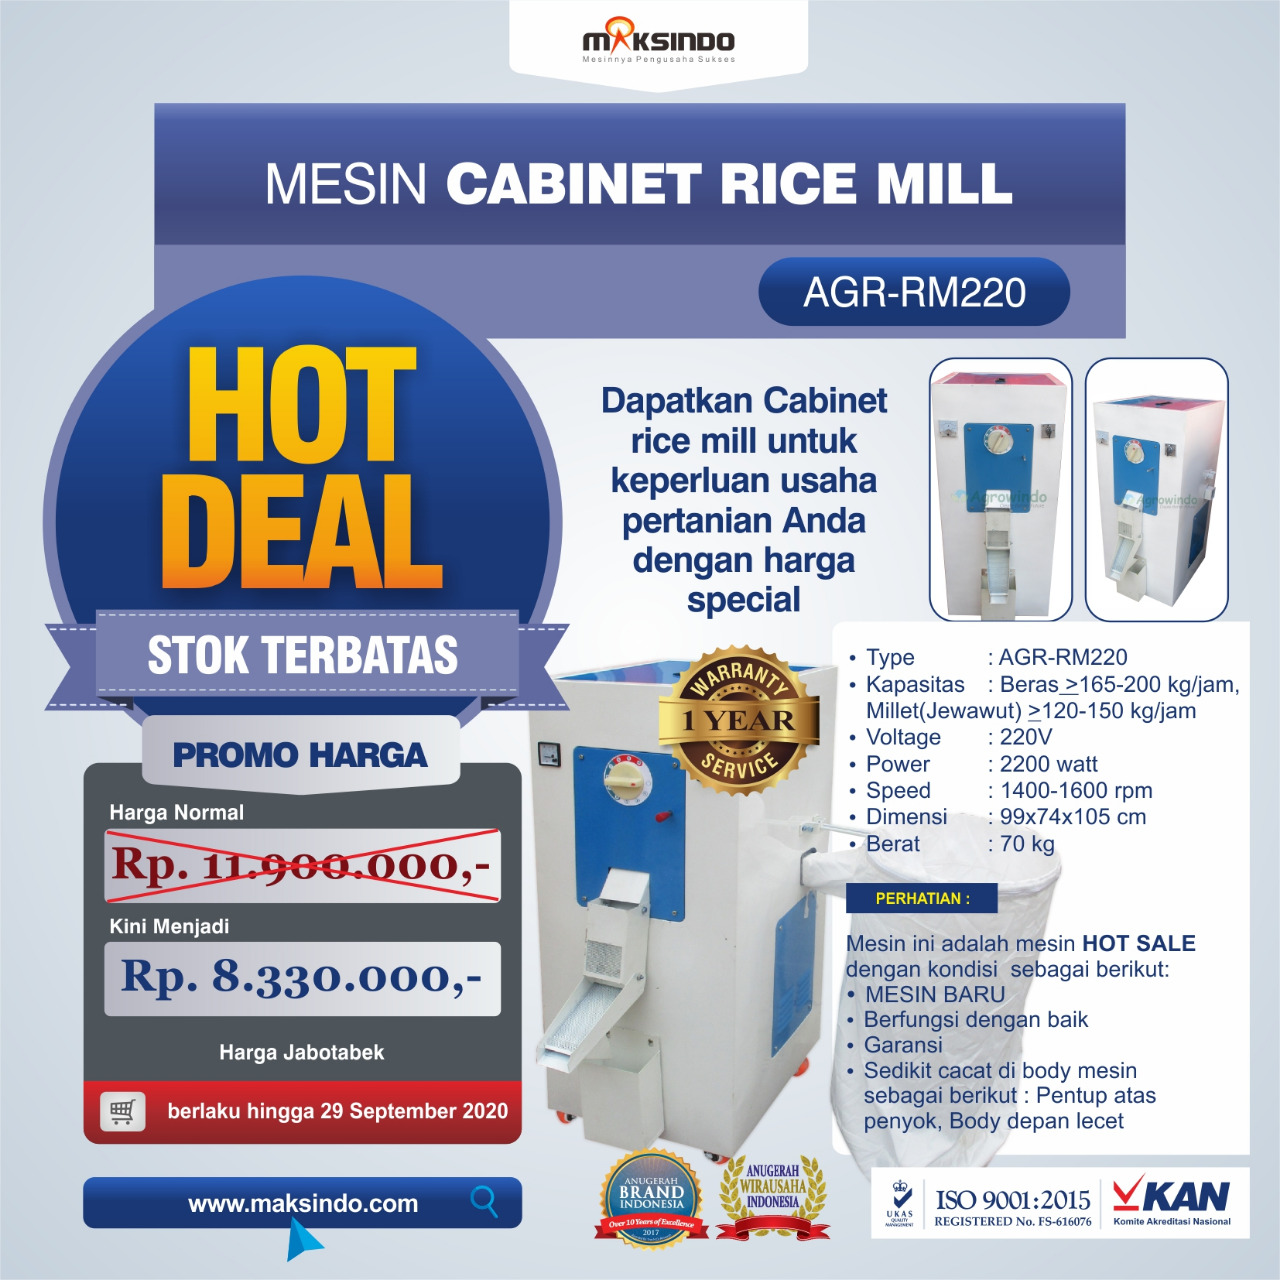 Jual Mesin Cabinet Rice Mill AGR-RM220 di Medan